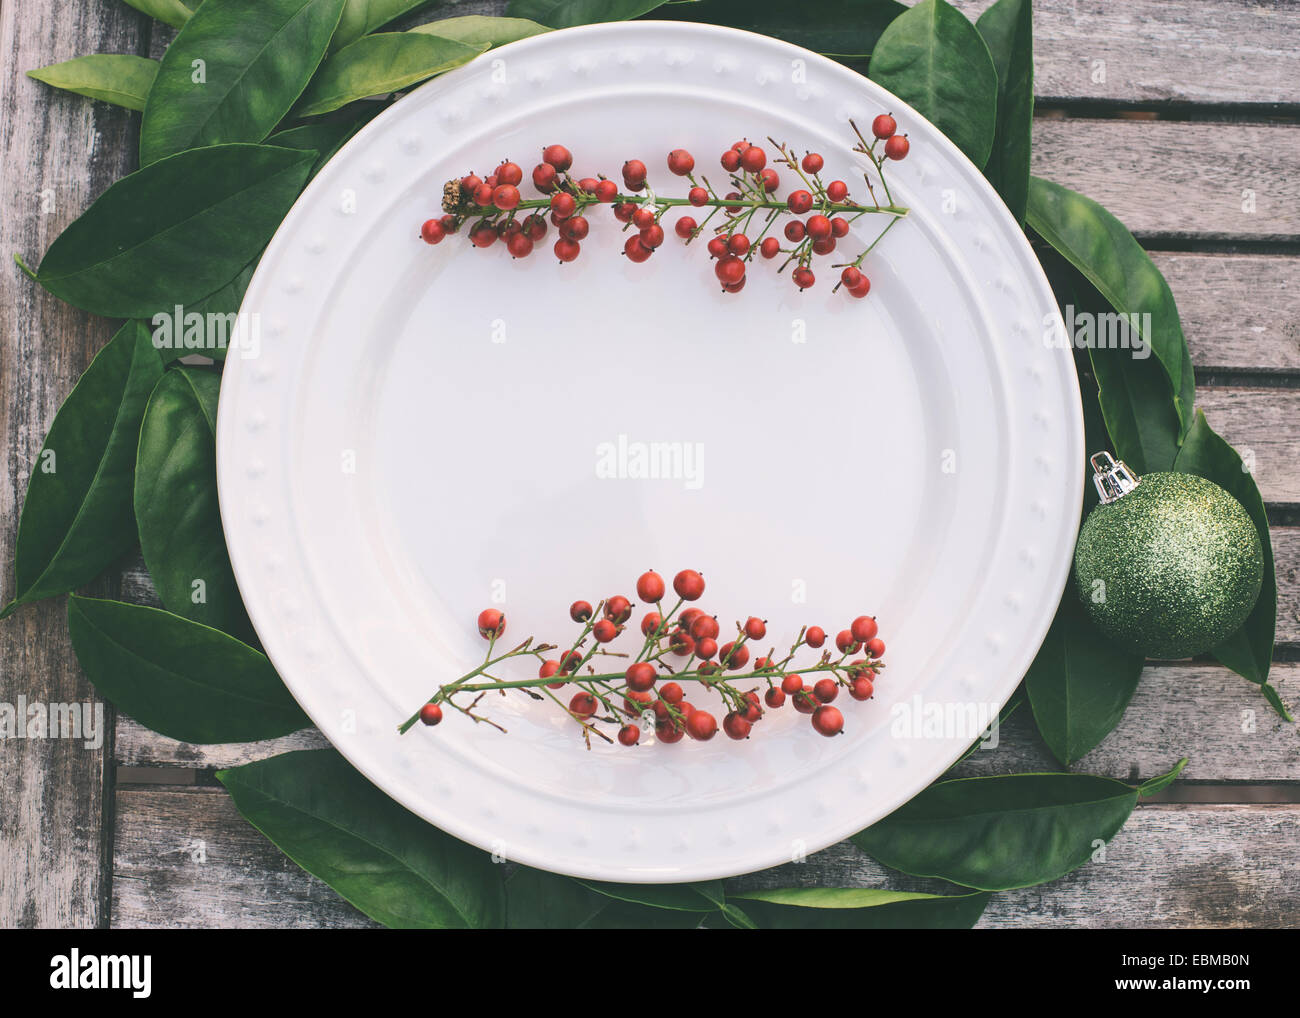 Réglage de la table de Noël rustique aux fruits rouges en bordure d'une plaque blanche Banque D'Images